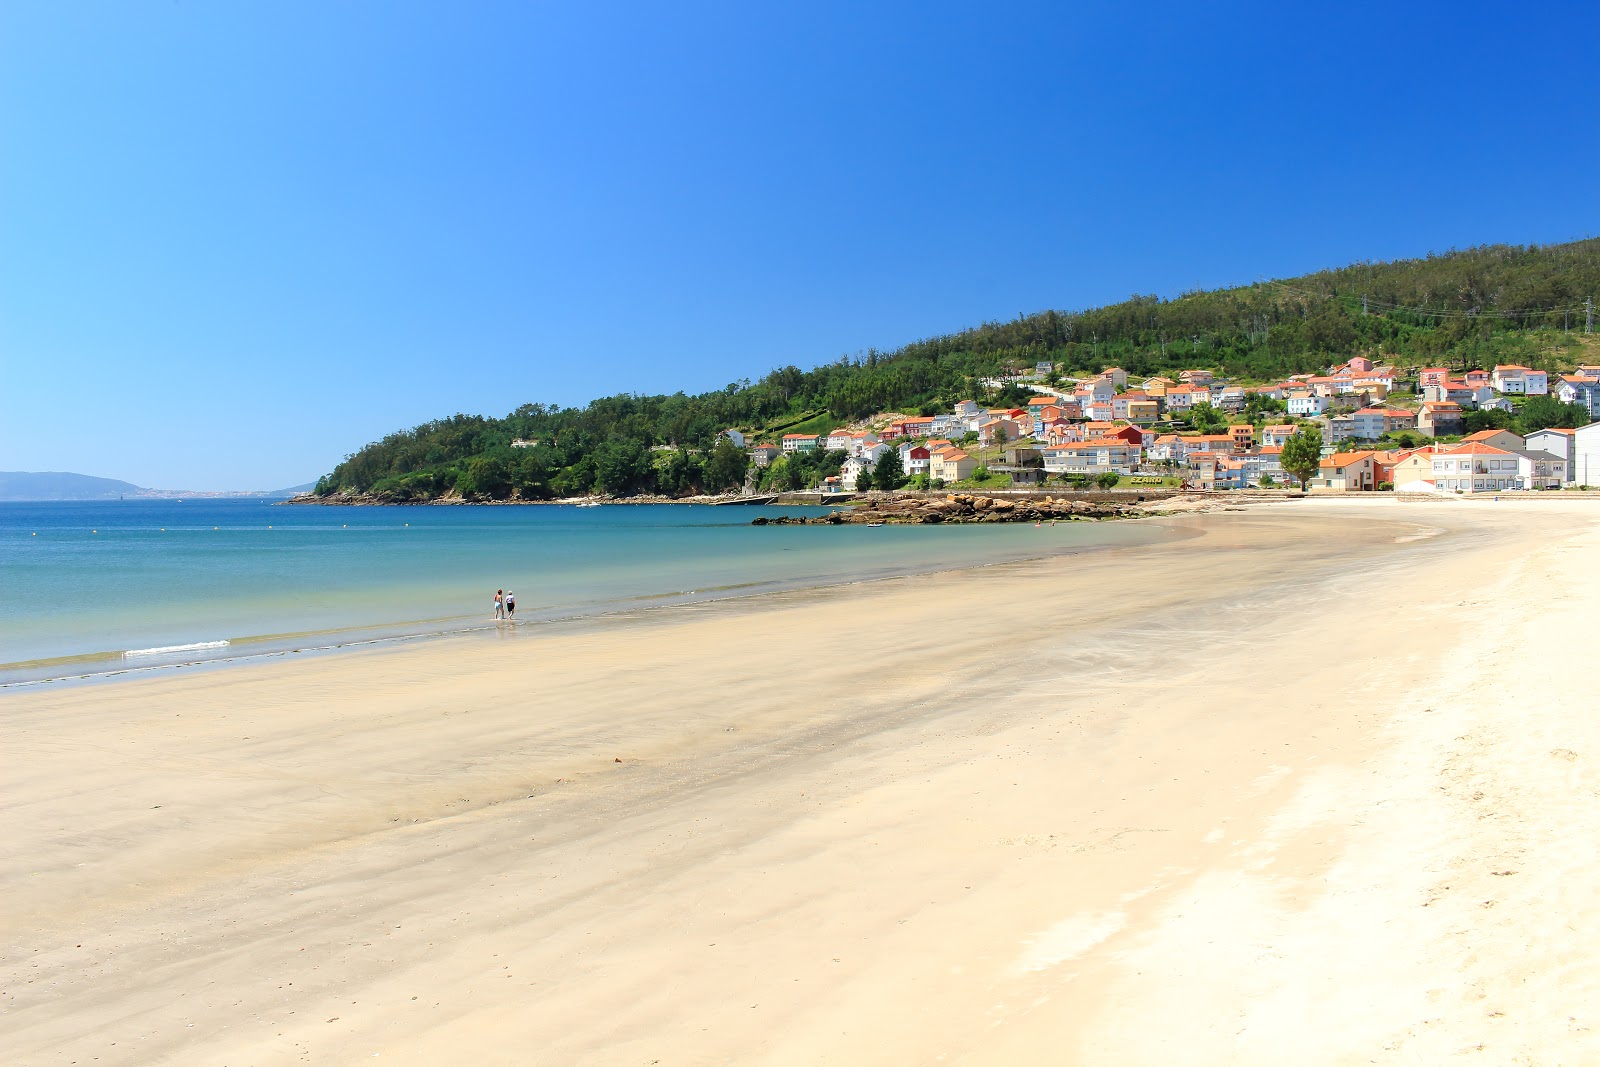 Praia do Ezaro'in fotoğrafı beyaz kum yüzey ile